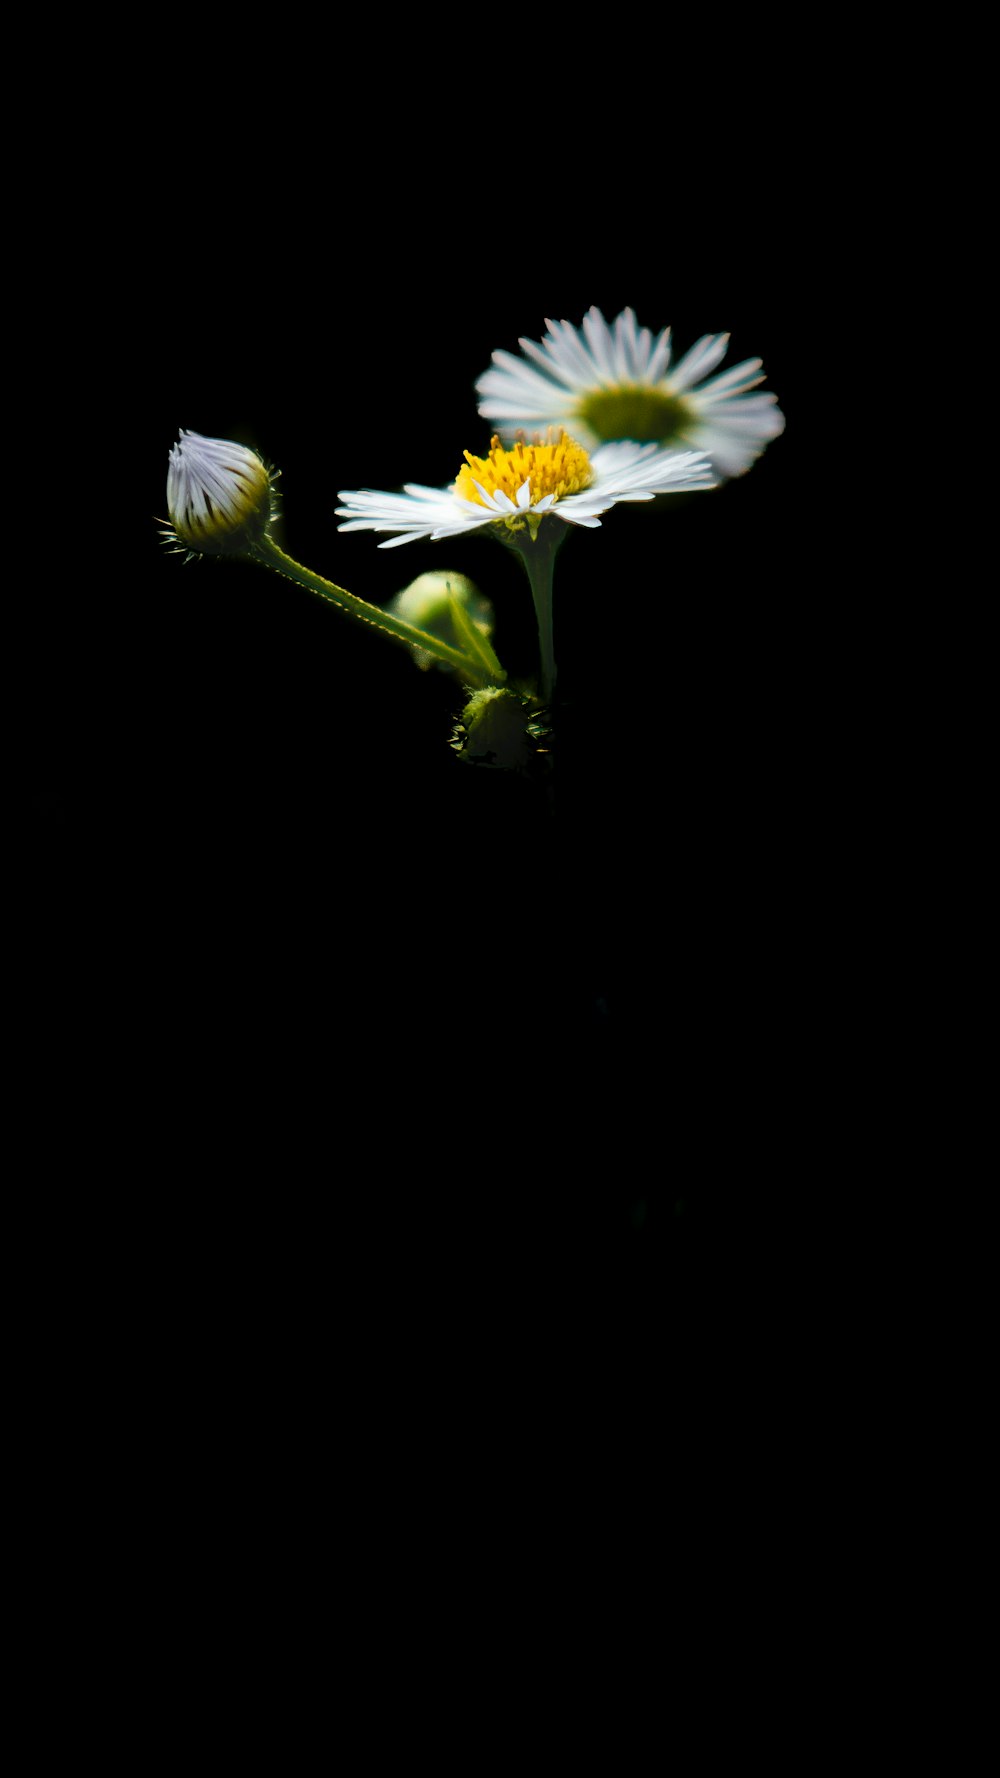 검은 배경에 흰색과 노란색 꽃 사진 – Unsplash의 무료 아몰레드 이미지